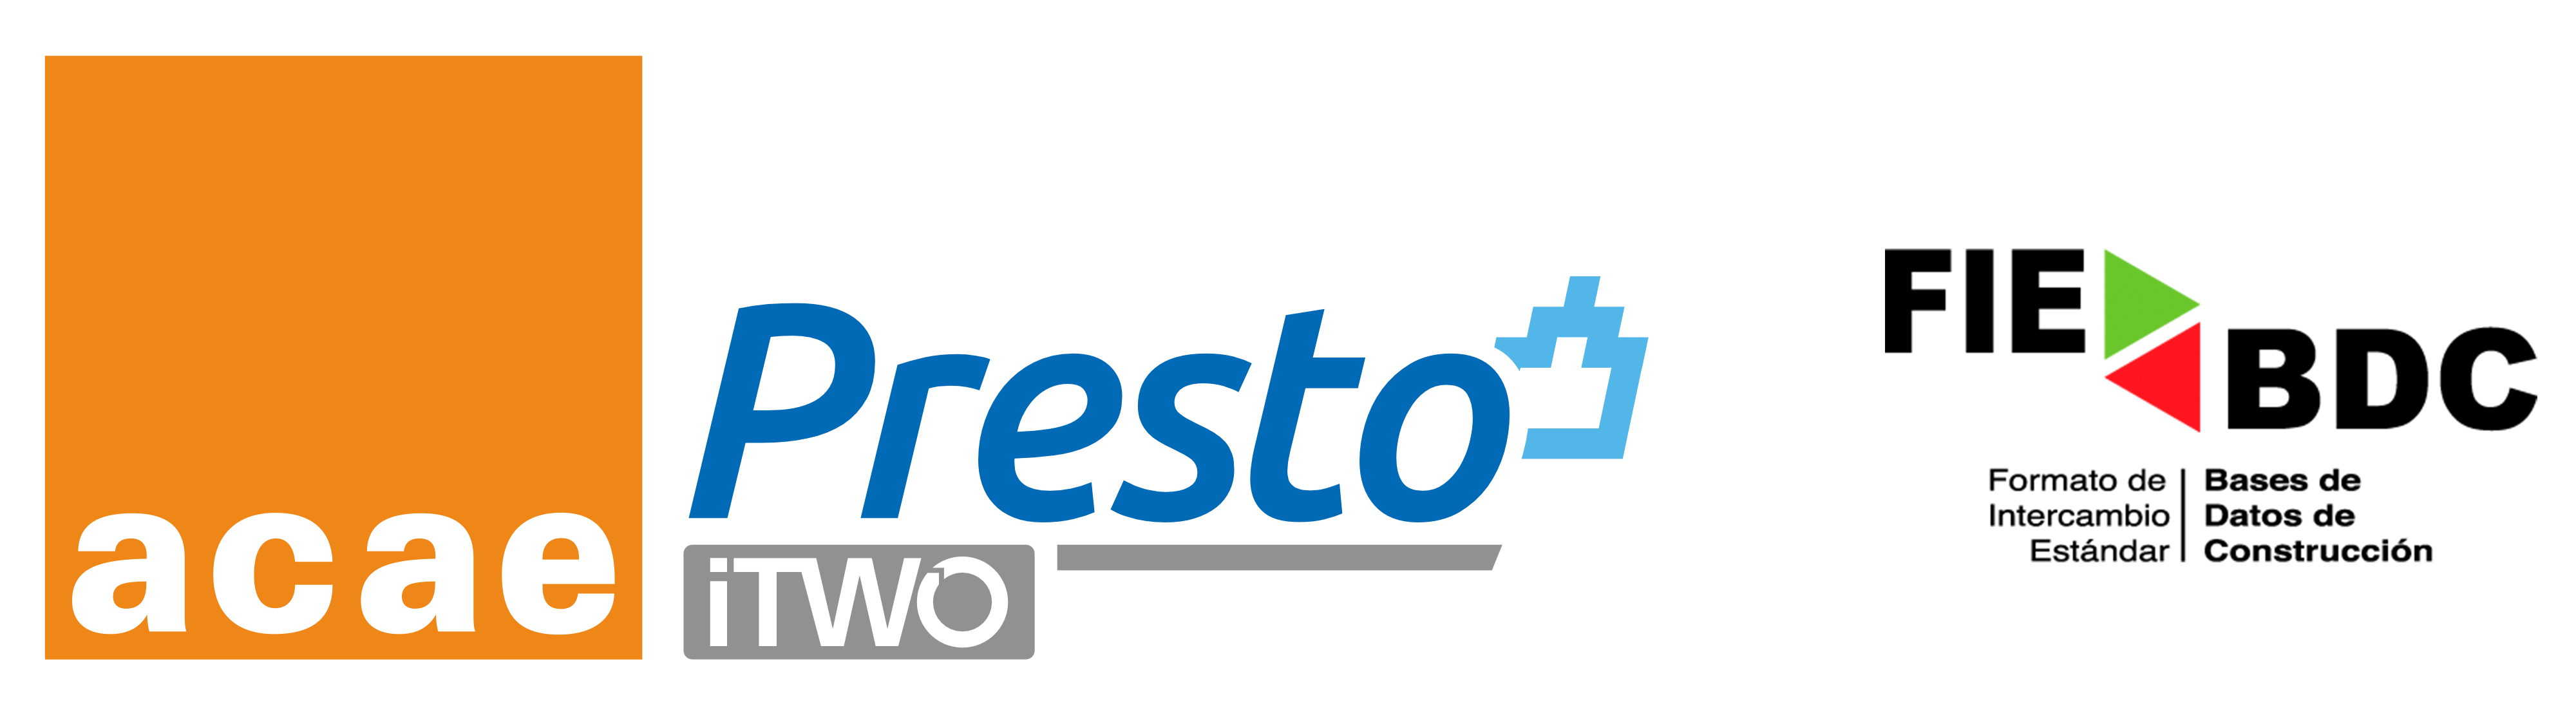 Logotipo Presto y Acae